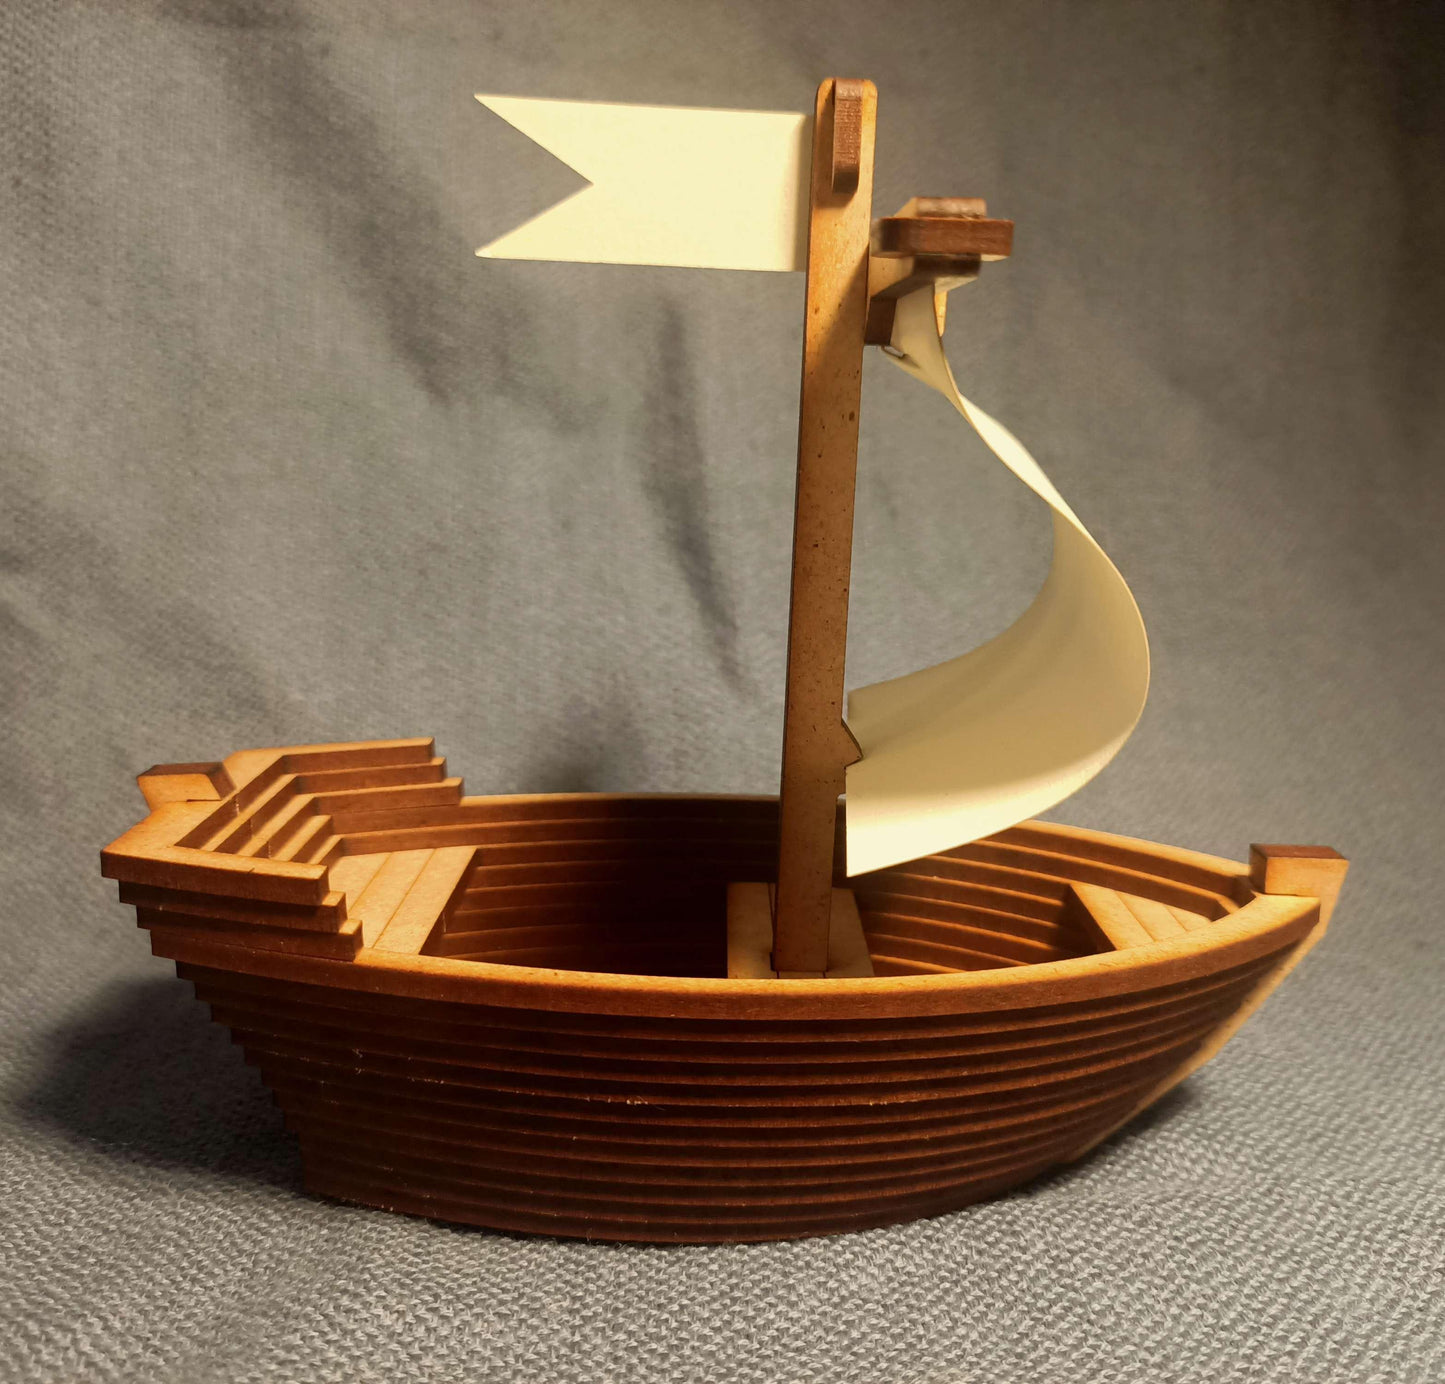 Le petit bateau - Maquette